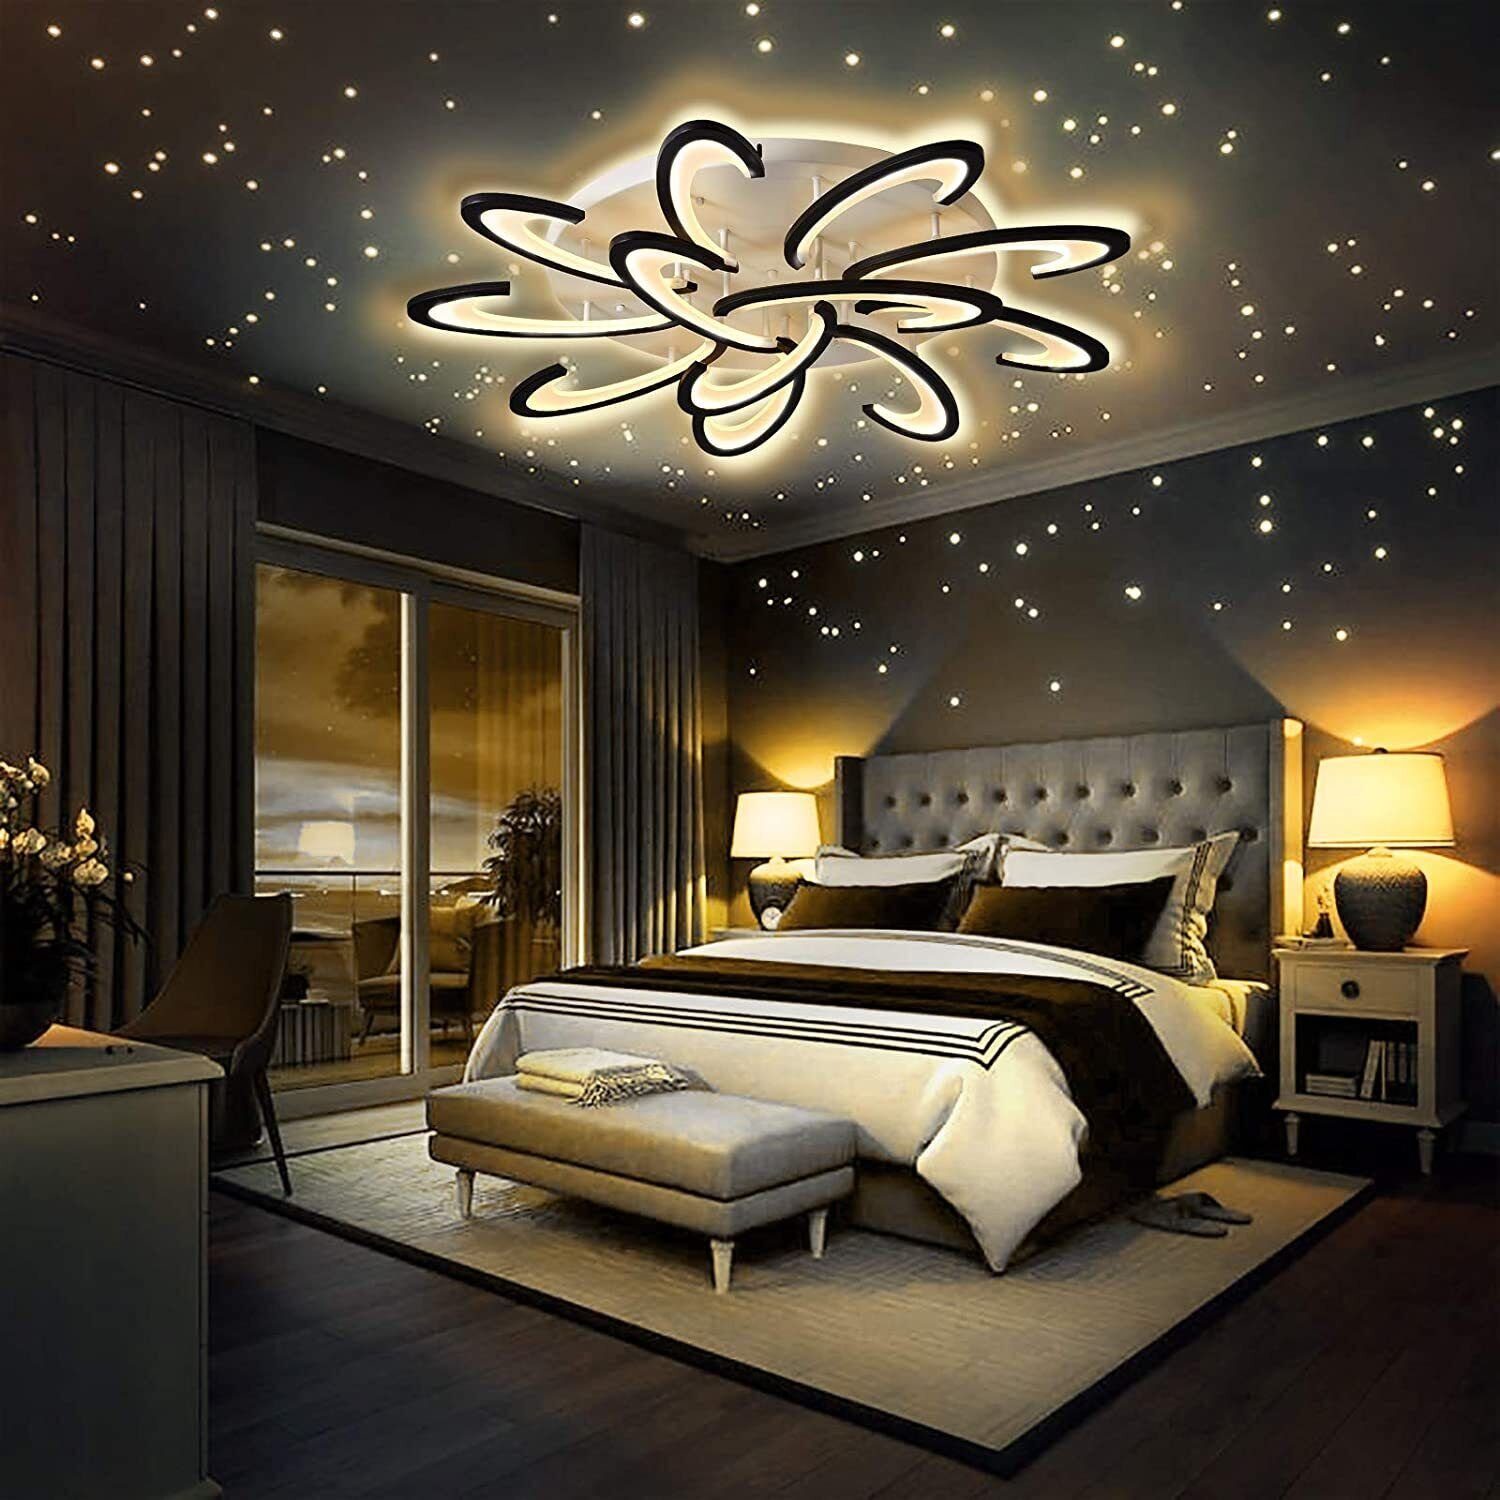 LED Deckenlampe Kaltweiß, Wohnzimmer LETGOSPT Licht Dimmbar, Flur LED / Blumenförmiges, Deckenlampe 60W integriert, 120W fest Deckenleuchte Schlafzimmer / Naturweiß, 80W Warmweiß, für Deckenleuchten, 120W Fernbedienung,